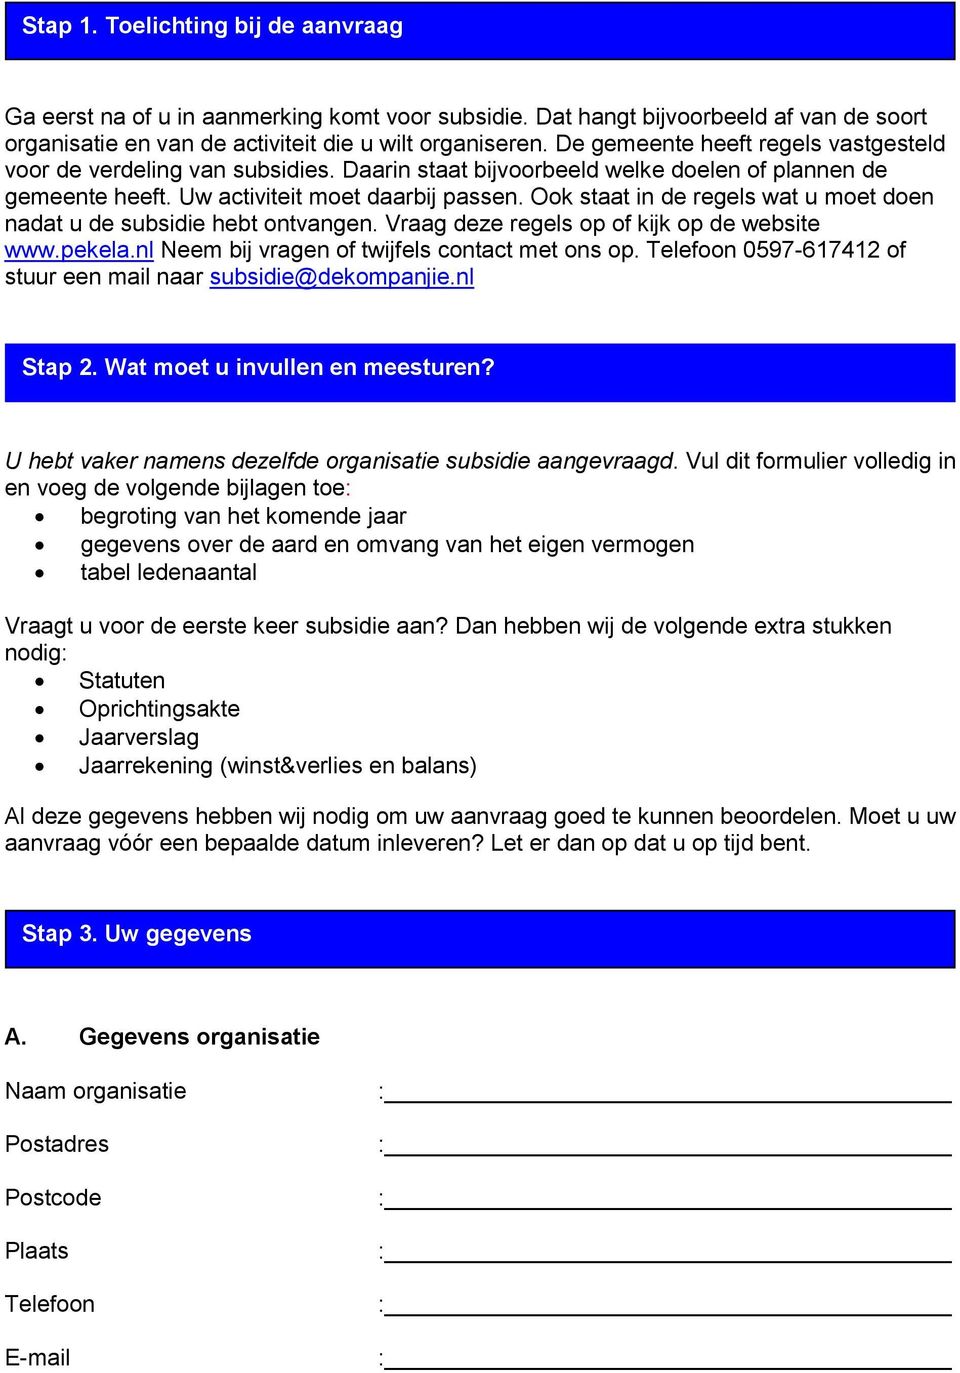 ok staat in de regels wat u moet doen nadat u de subsidie hebt ontvangen. Vraag deze regels op of kijk op de website www.pekela.nl Neem bij vragen of twijfels contact met ons op.